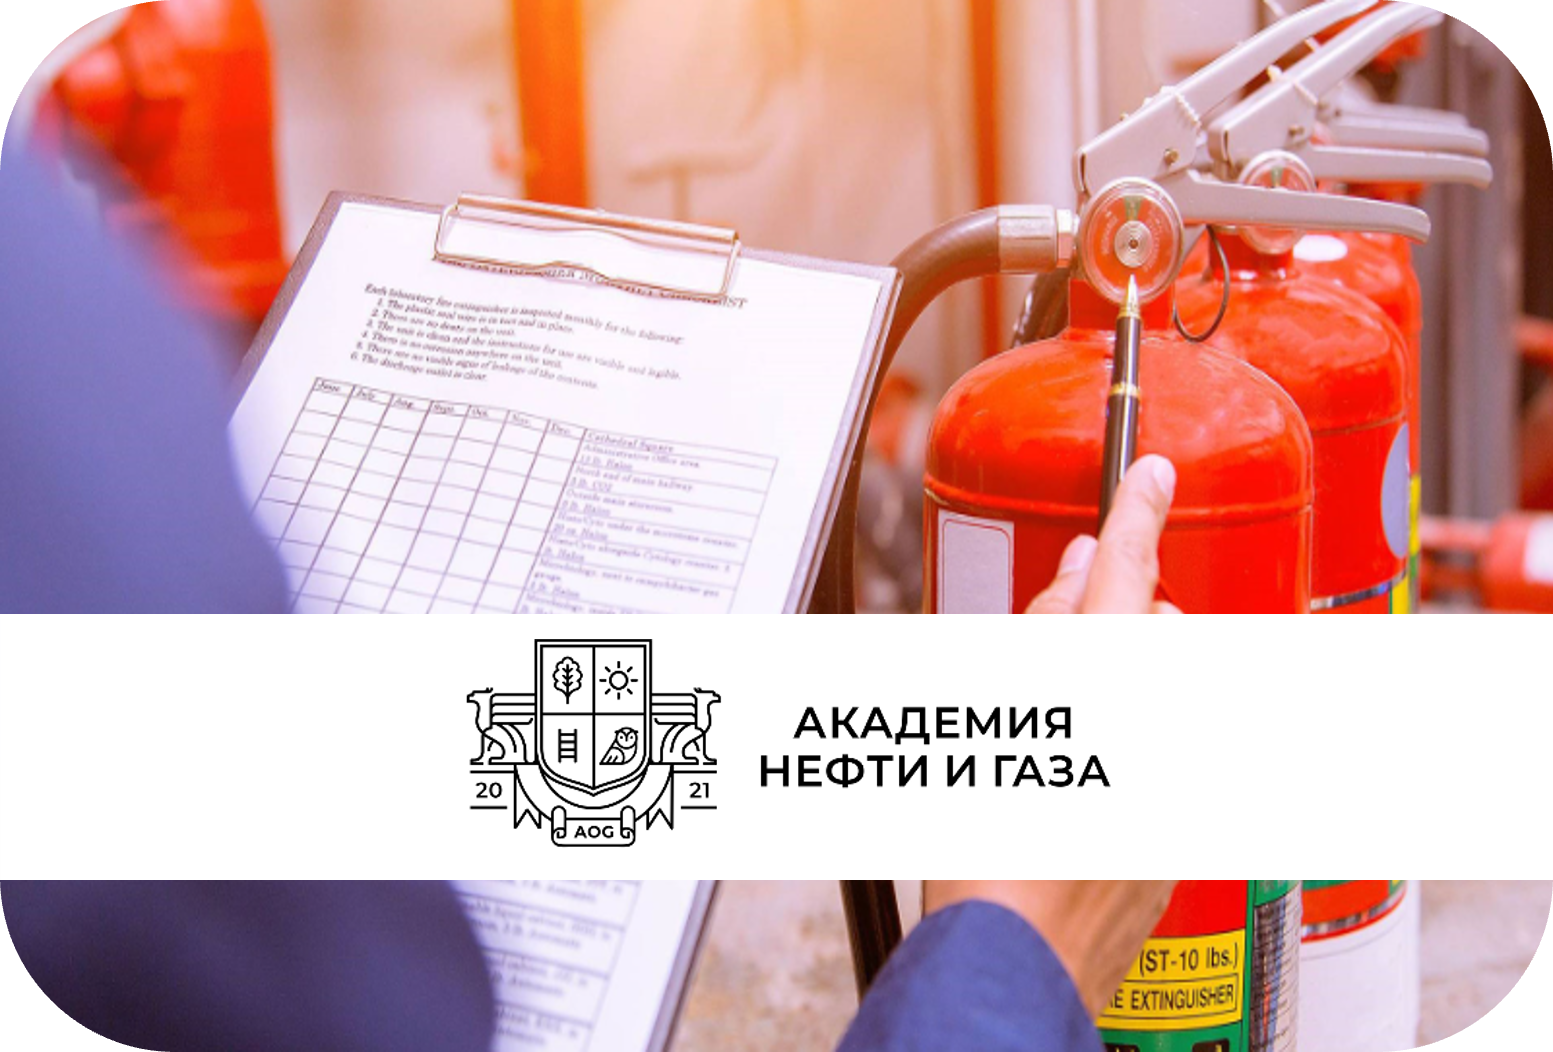 Профессиональная программа повышения квалификации для руководителей эксплуатирующих и управляющих организаций, осуществляющих хозяйственную деятельность, связанную с обеспечением пожарной безопасности на объектах защиты лиц